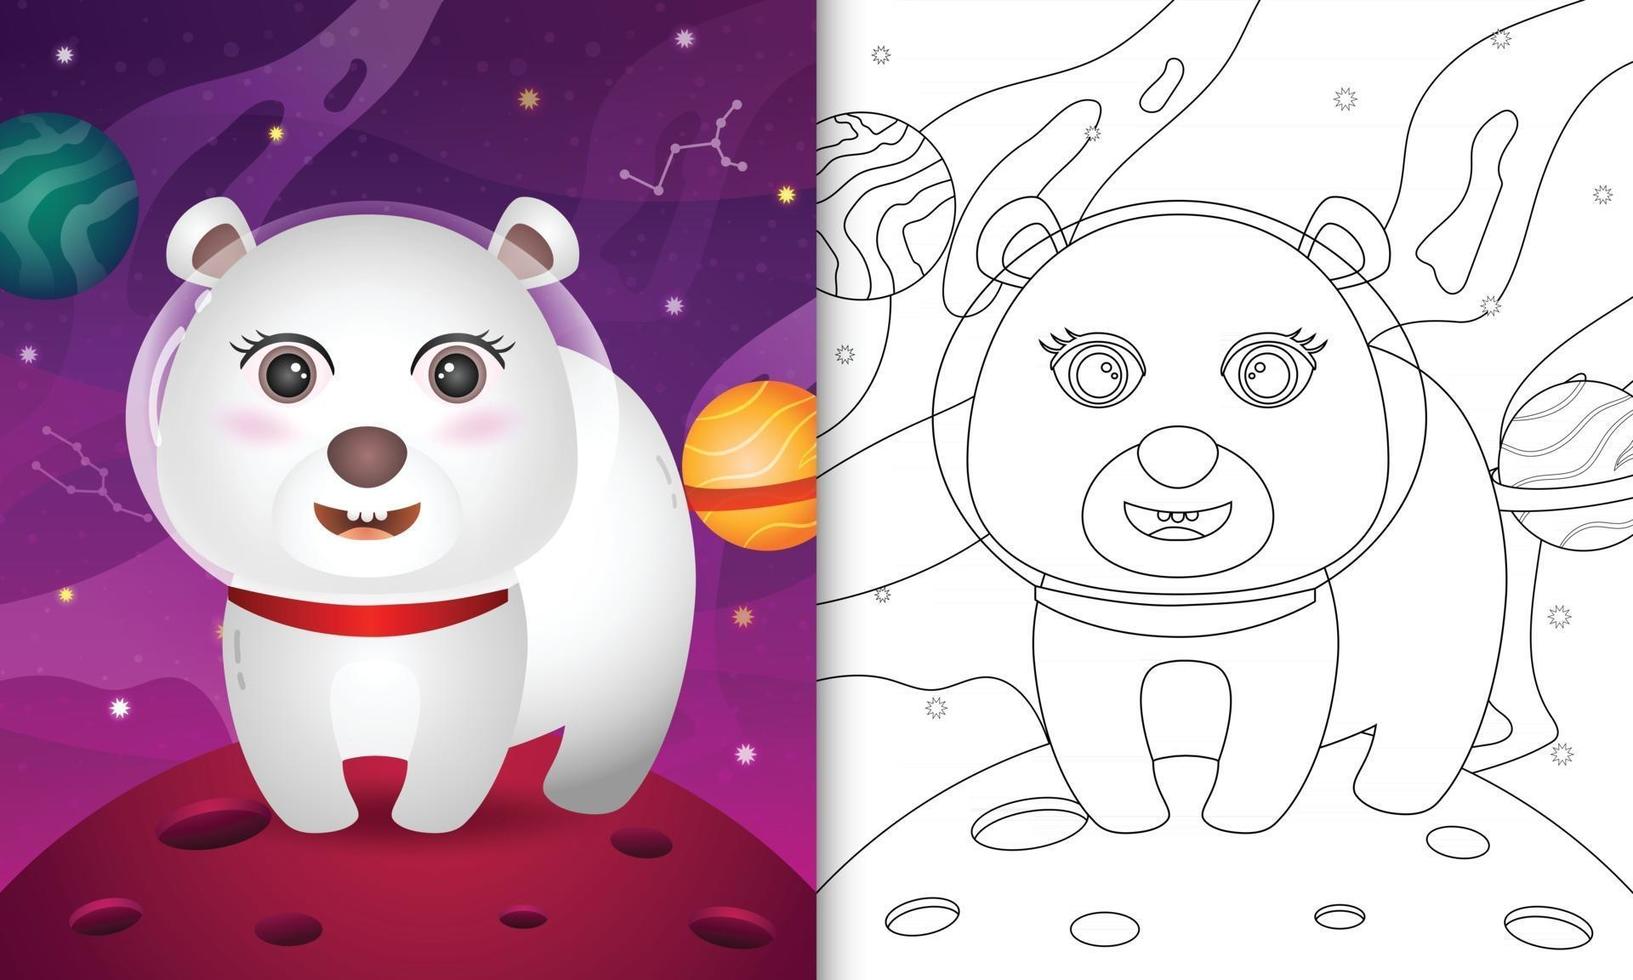 Malbuch für Kinder mit einem süßen Eisbären in der Weltraumgalaxie vektor